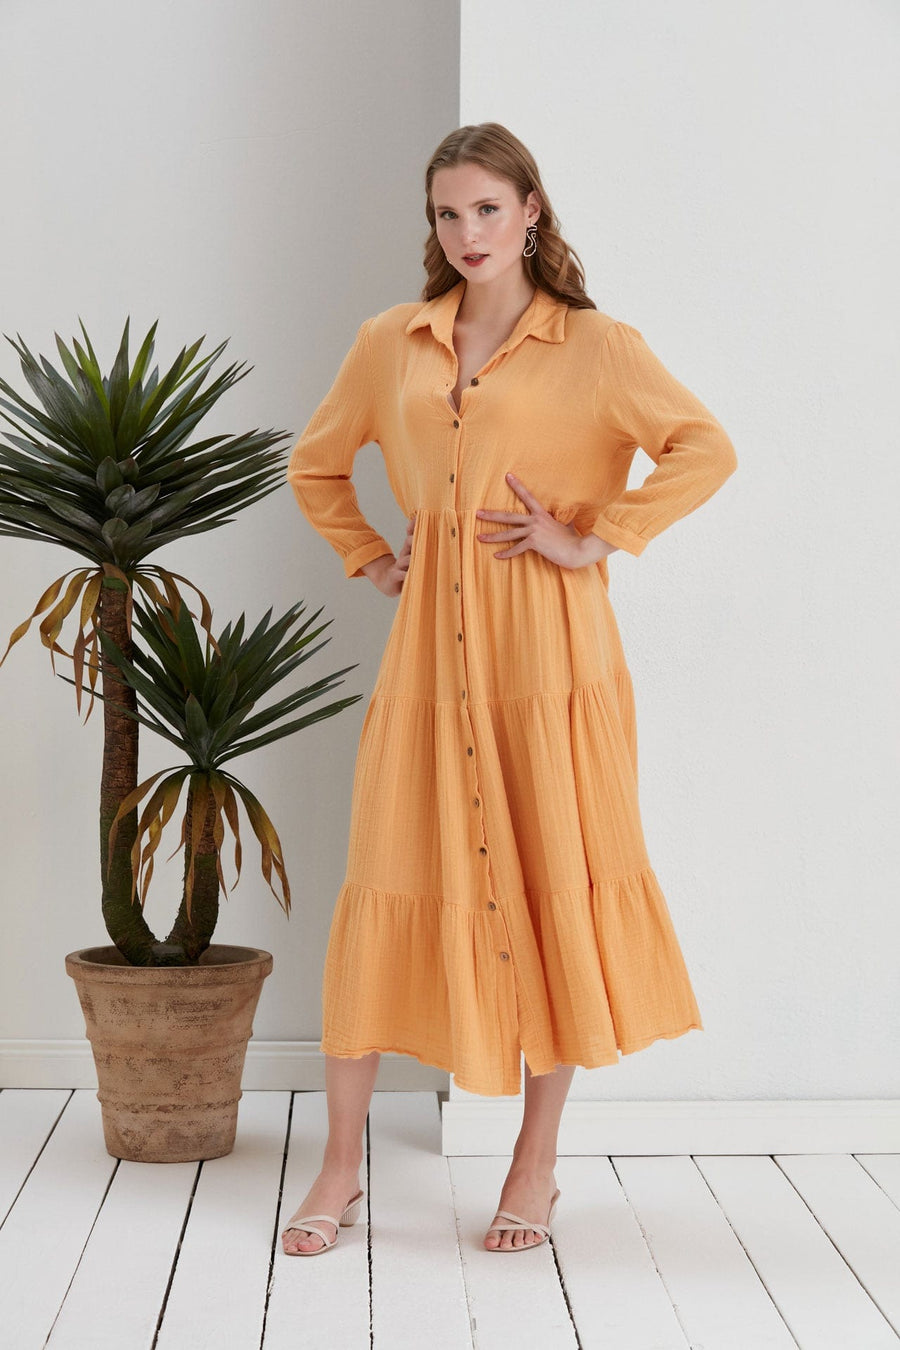 Begonville Uzun Elbise Maya Oversize Uzun Gömlek Elbise - Kayısı Sarısı